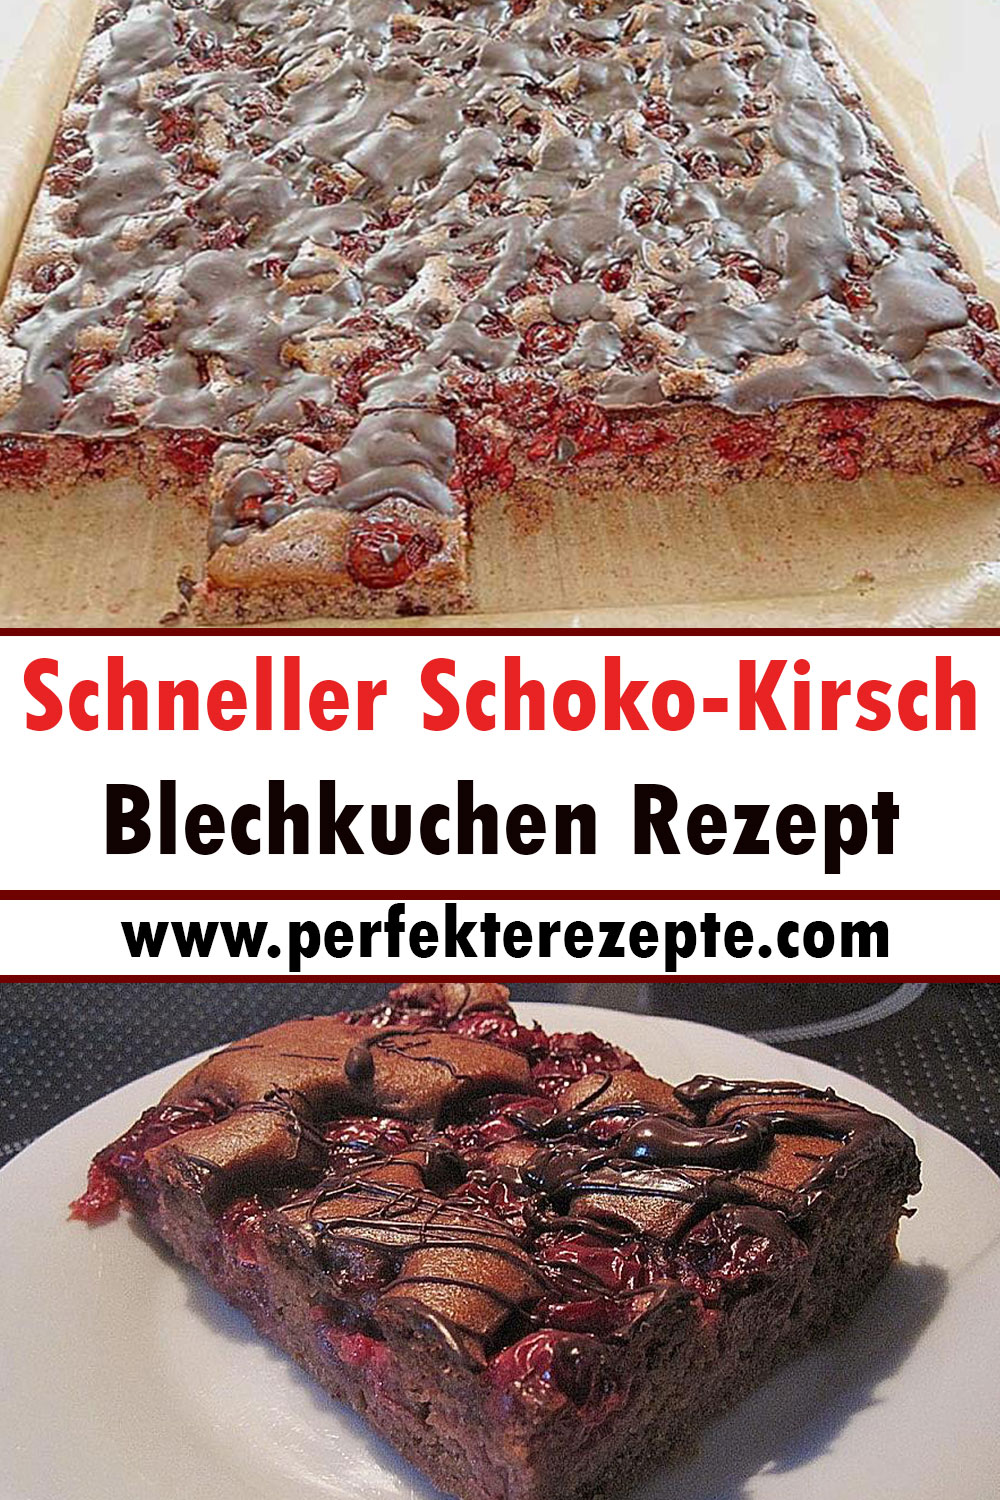 Schneller Schoko-Kirsch-Blechkuchen Rezept